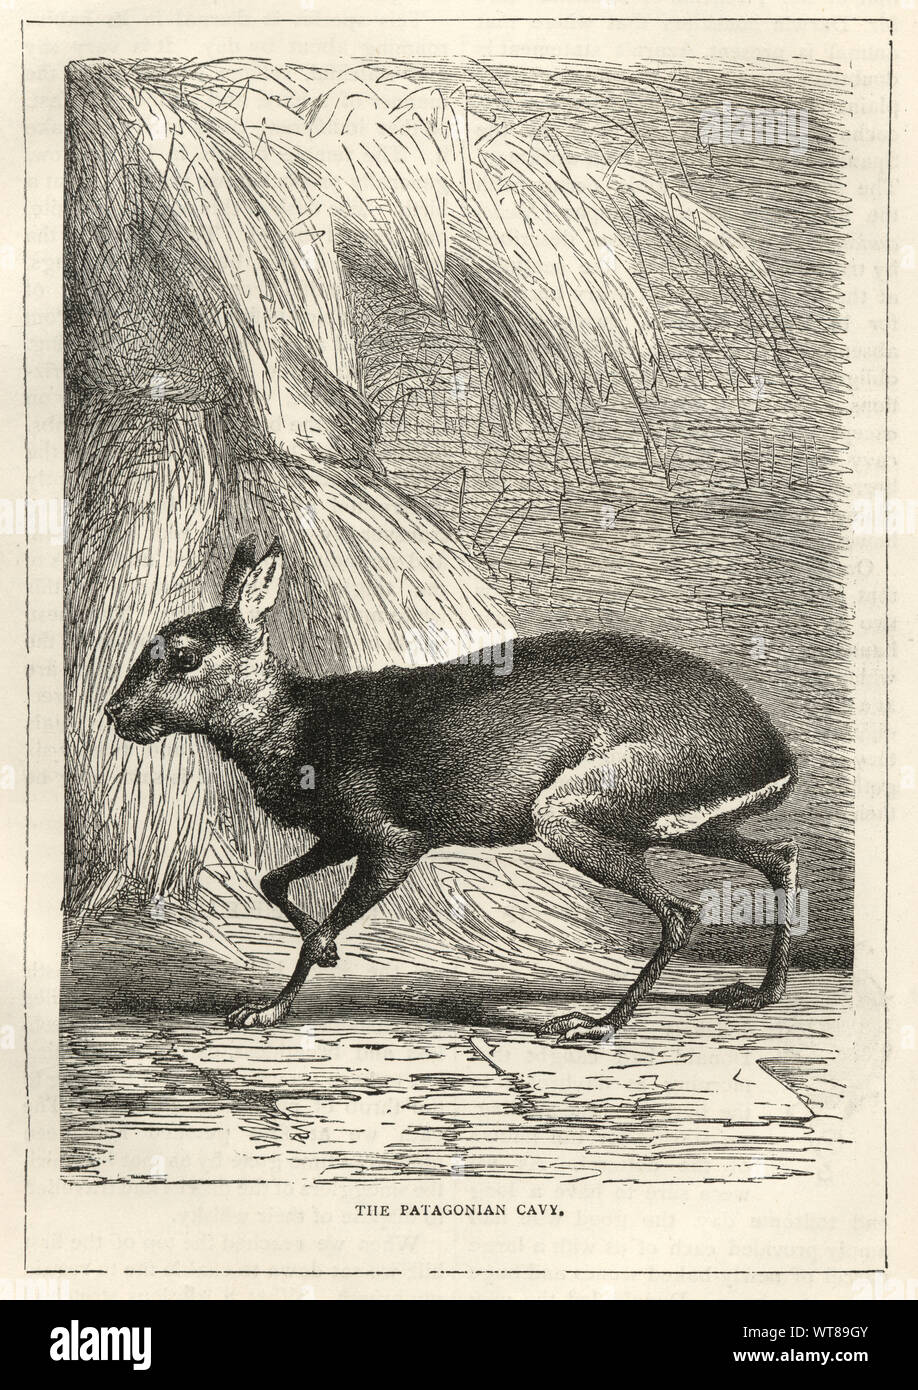 Vintage grabado de un Patagonian mara (Dolichotis patagonum) un roedor relativamente grandes en el género mara Dolichotis. También es conocida como la liebre patagónica, cavy patagónicos, o dillaby., del siglo XIX. Foto de stock